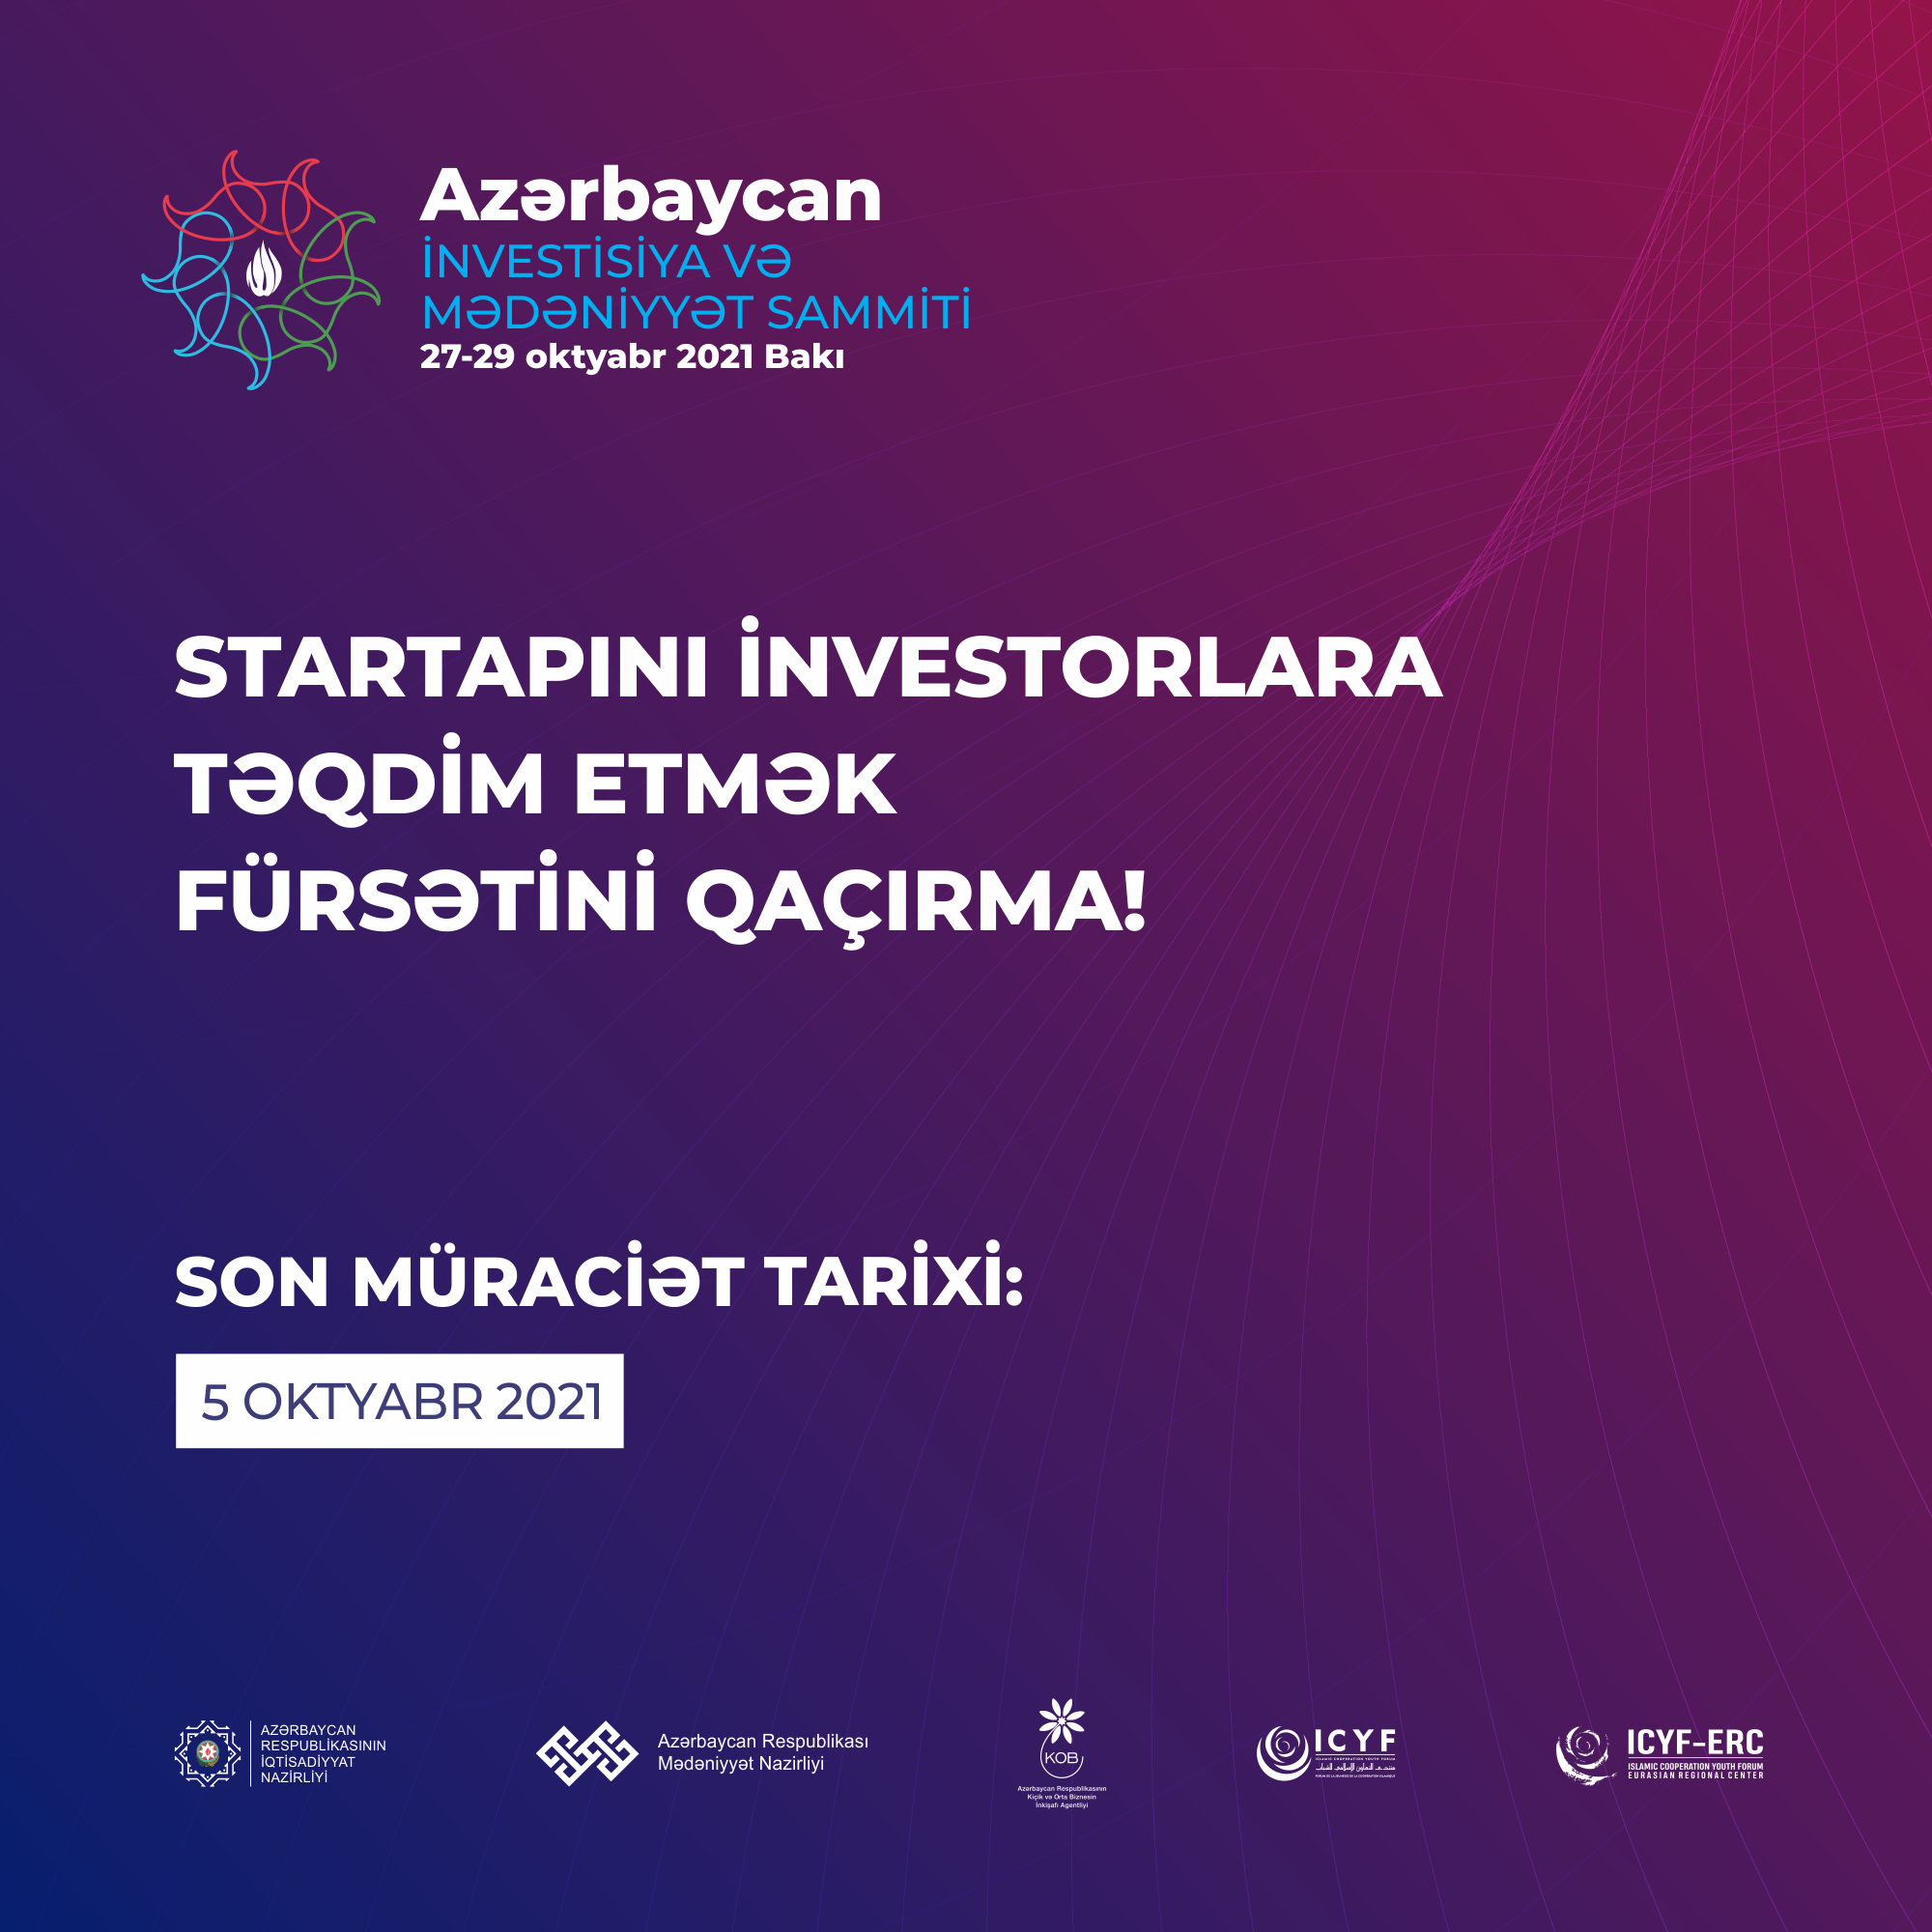 Азербайджанский Саммит Инвестиций и Культуры предоставит стартапам возможность представить свои проекты инвесторам 